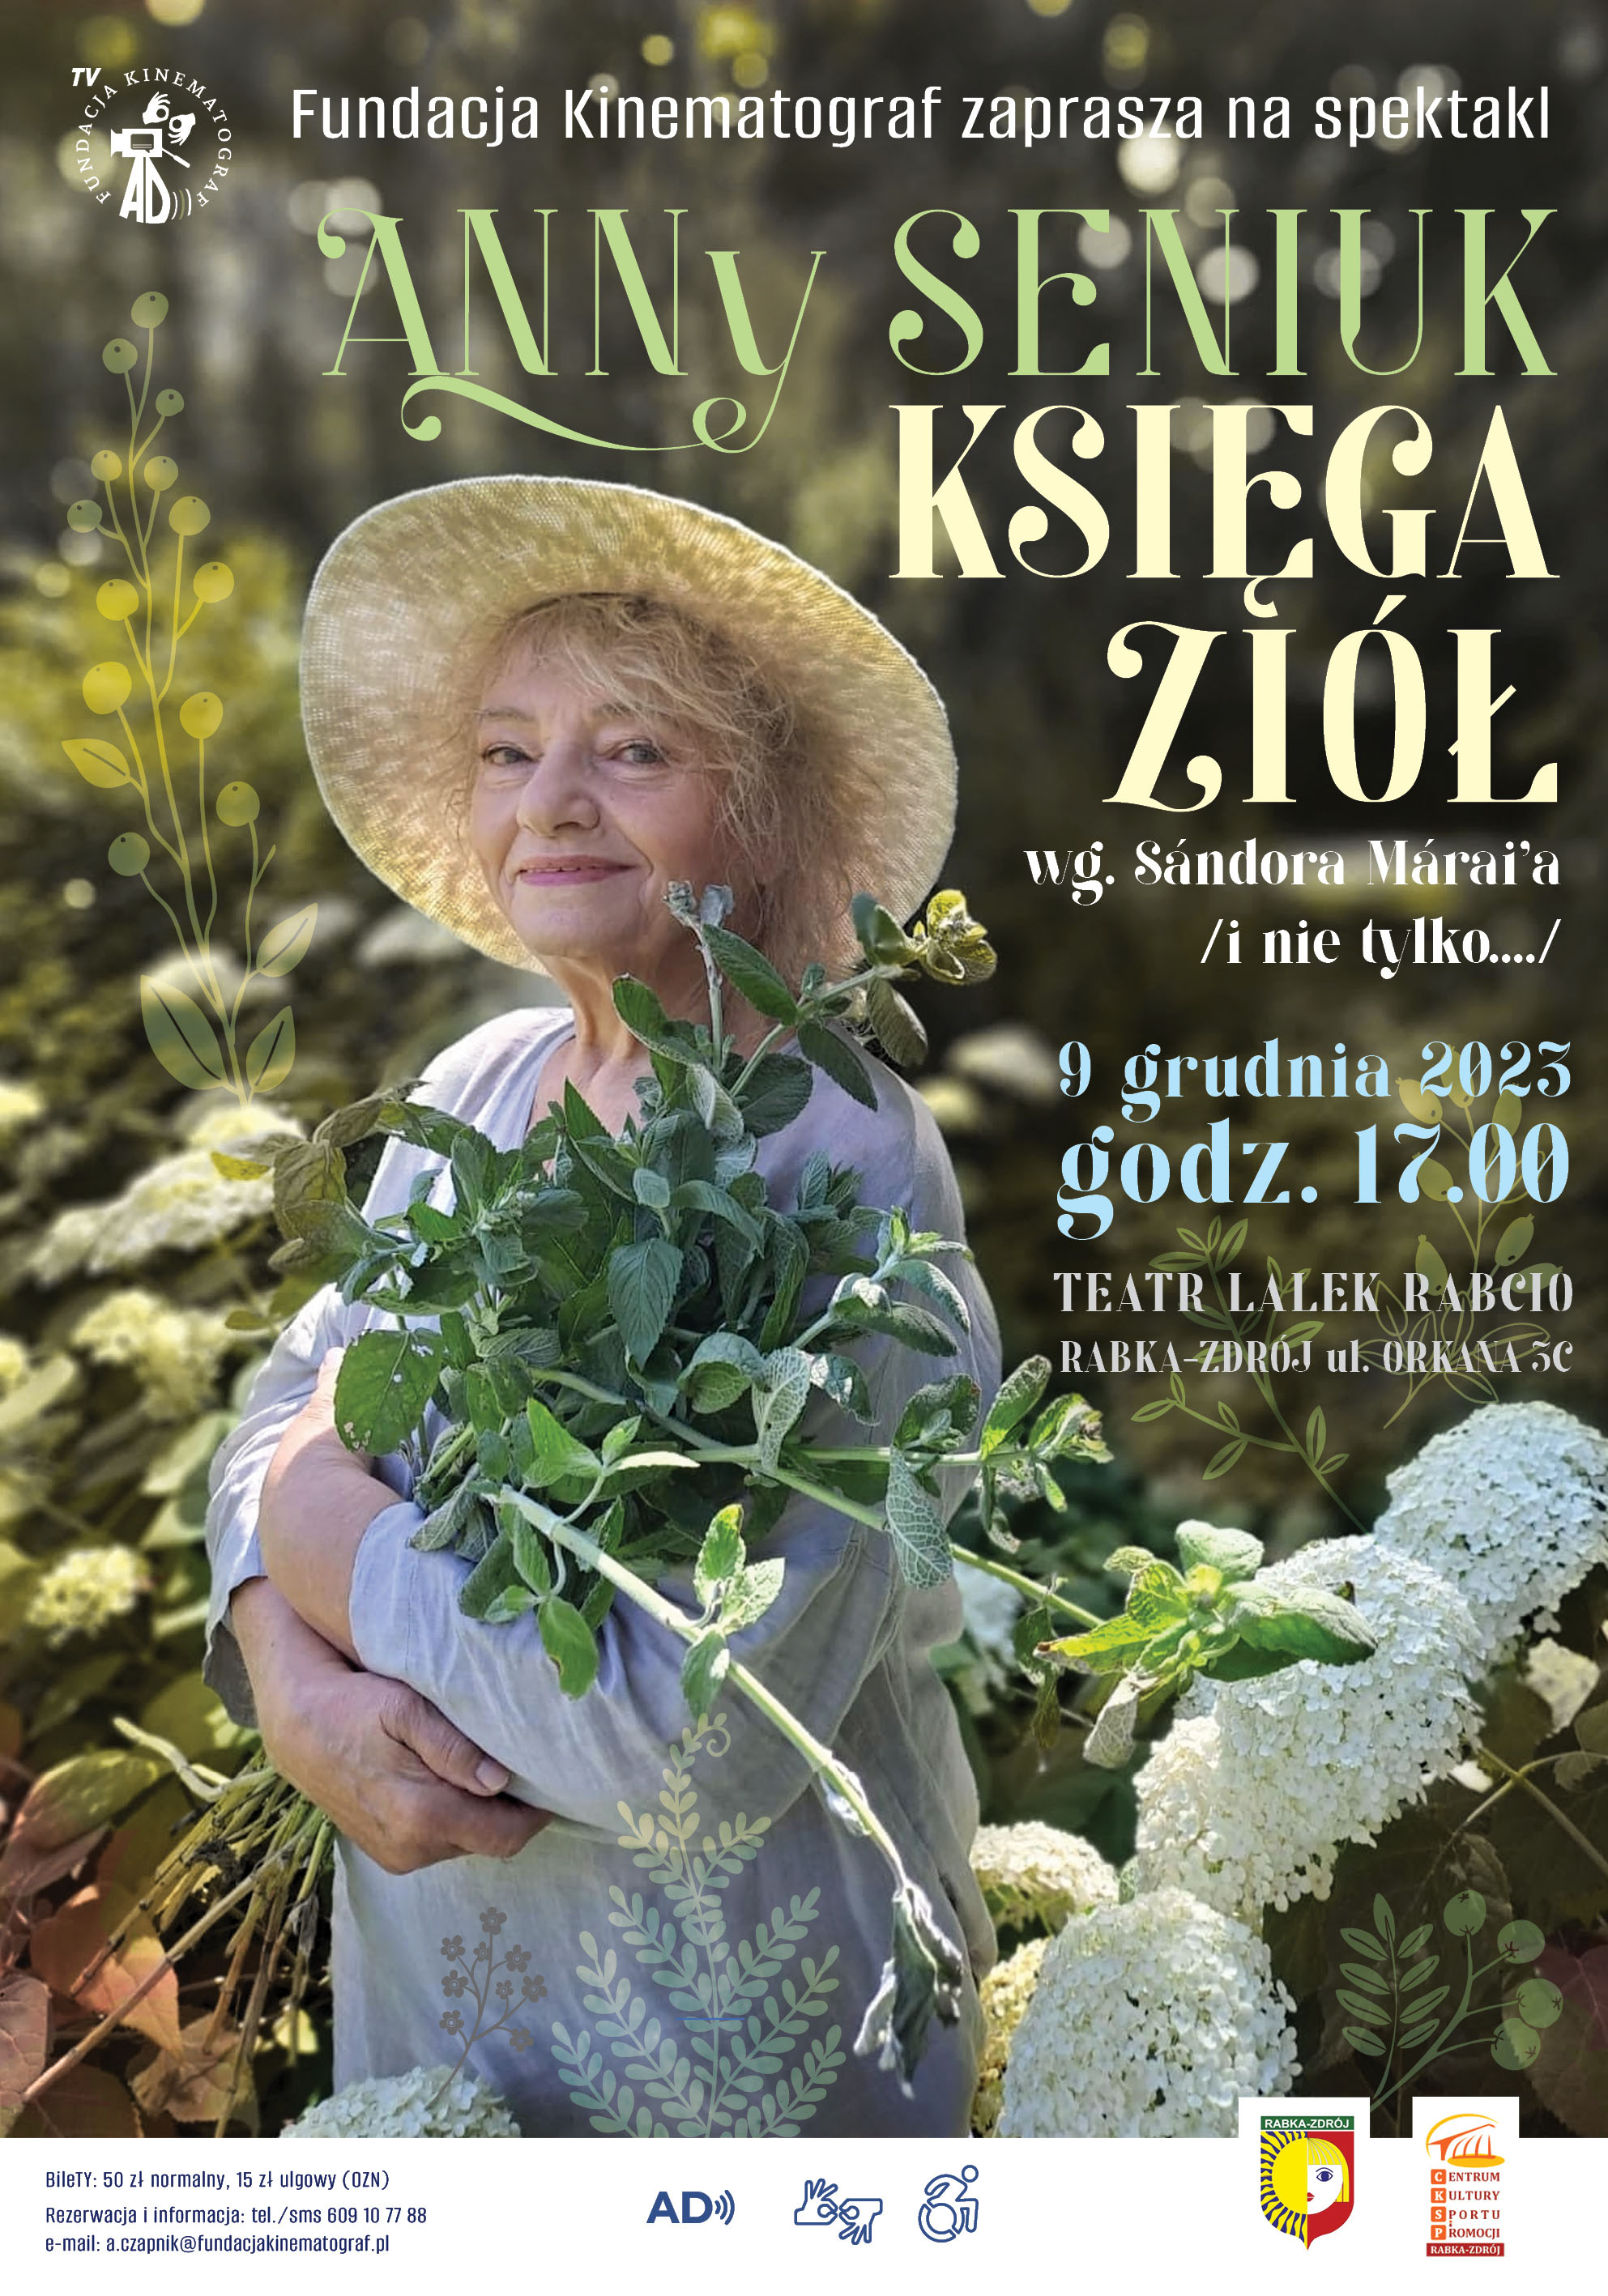 Plakat do spektaklu. Informacje o wydarzeniu w stylowych literach nałożone są na fotografię: Anna Seniuk stoi w ogrodzie w białej prostej sukience i słomkowym kapeluszu, z naręczem ziół. Słonce rozświetla zieleń.